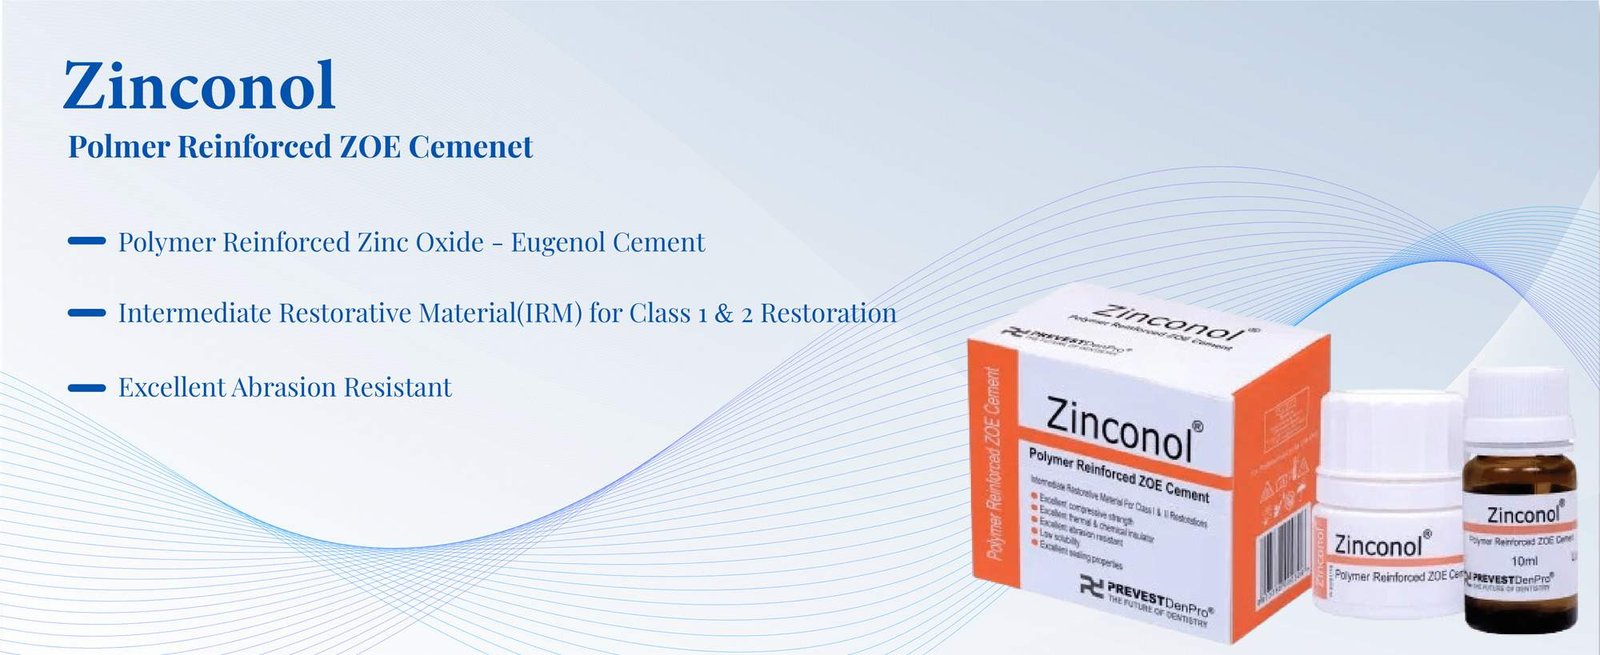 Polymer reinforced zinc oxide eugenol cement